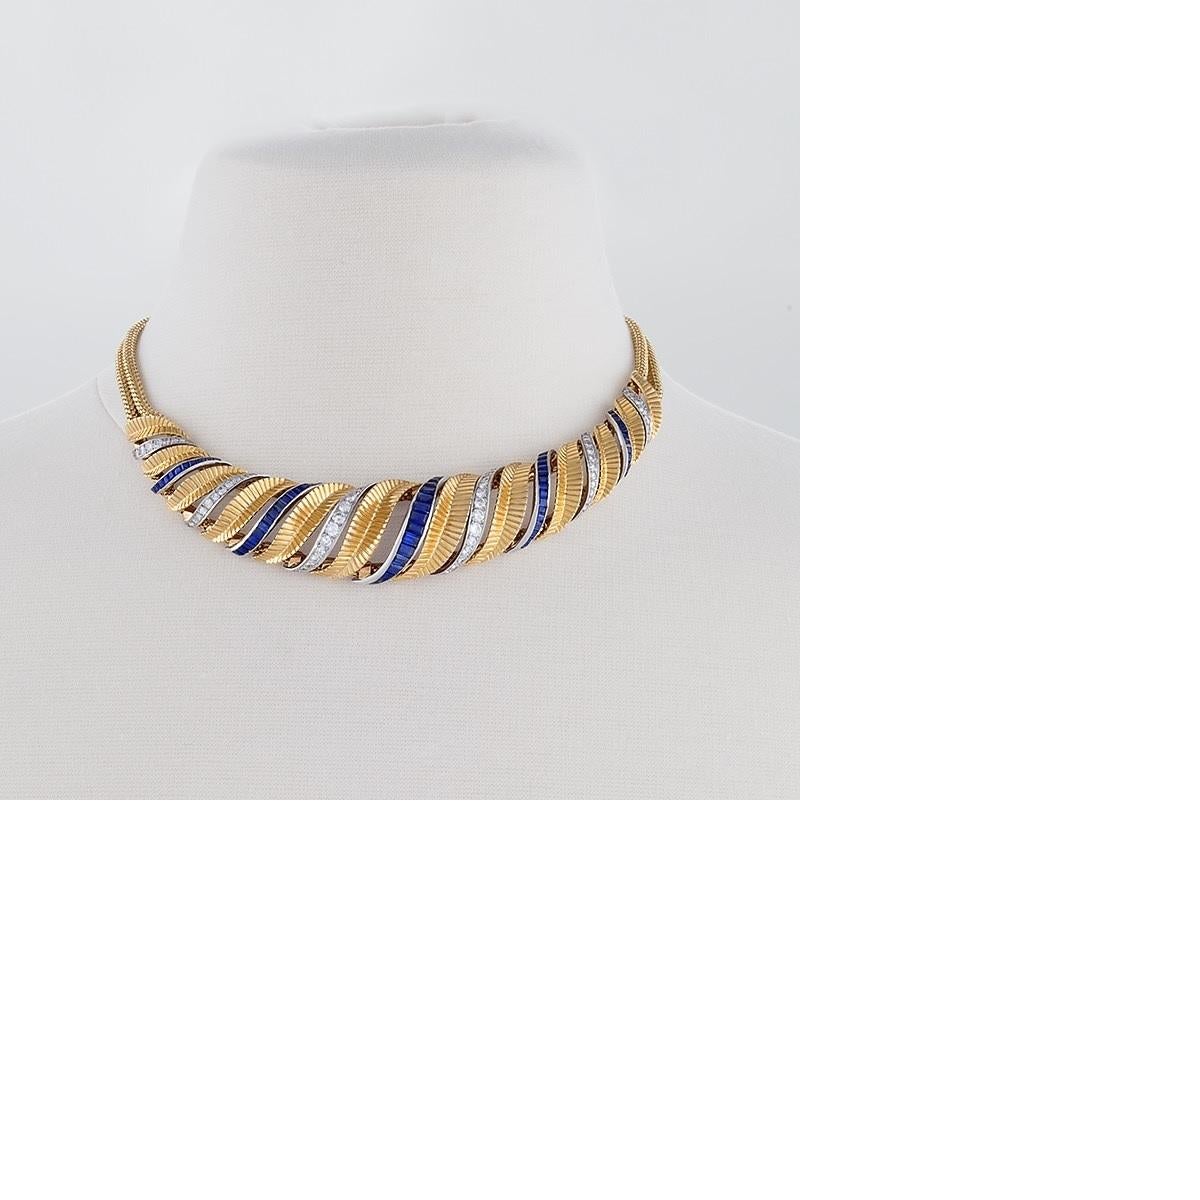 Französisches Retro-Halsband aus 18 Karat Gold und Platin mit Diamanten und Saphiren. Das Collier besteht aus 74 Diamanten im Rundschliff mit einem ungefähren Gesamtgewicht von 3,75 Karat und 66 Saphiren im Kaliberschliff mit einem ungefähren